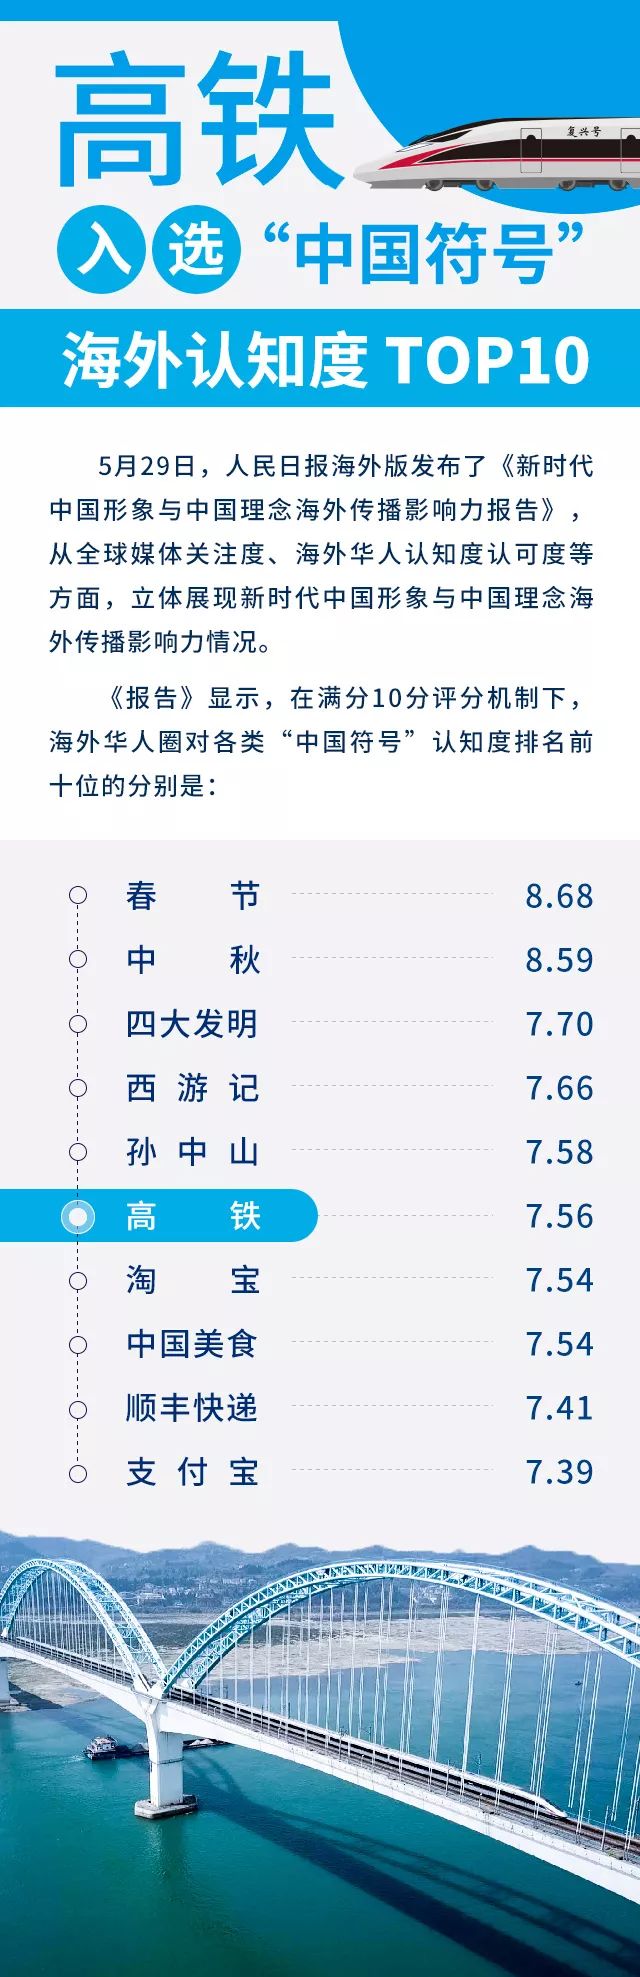 高铁入选“中国符号”海外认知度Top10